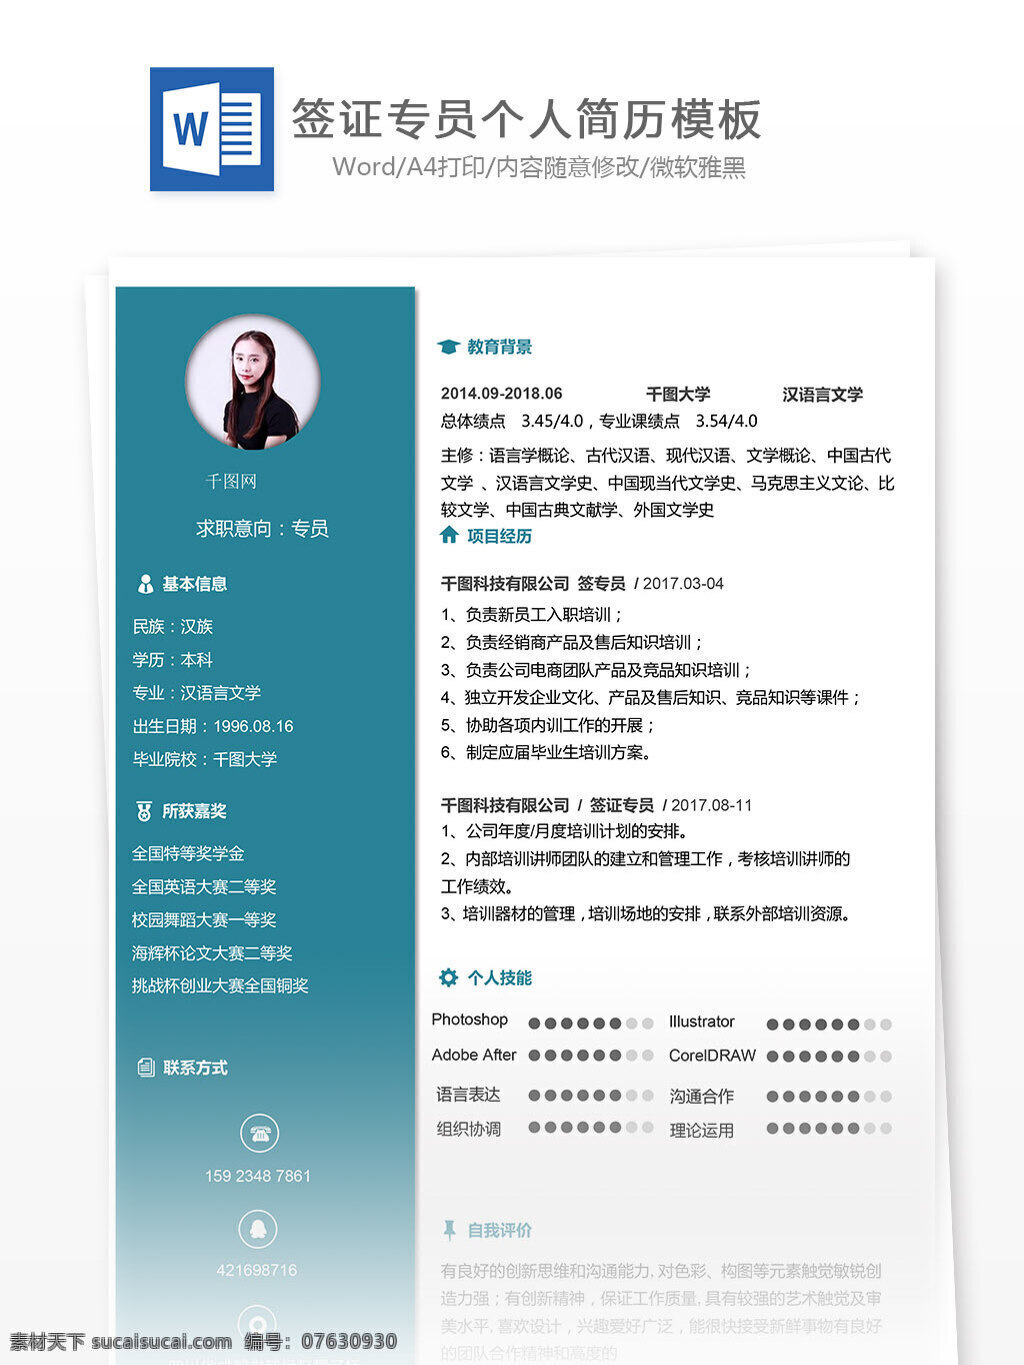 陈鹏 元 签证 专员 简历 模板下载 个人简历 旅游 简约 实用 简历模板 个人简历模板 签证专员 13年